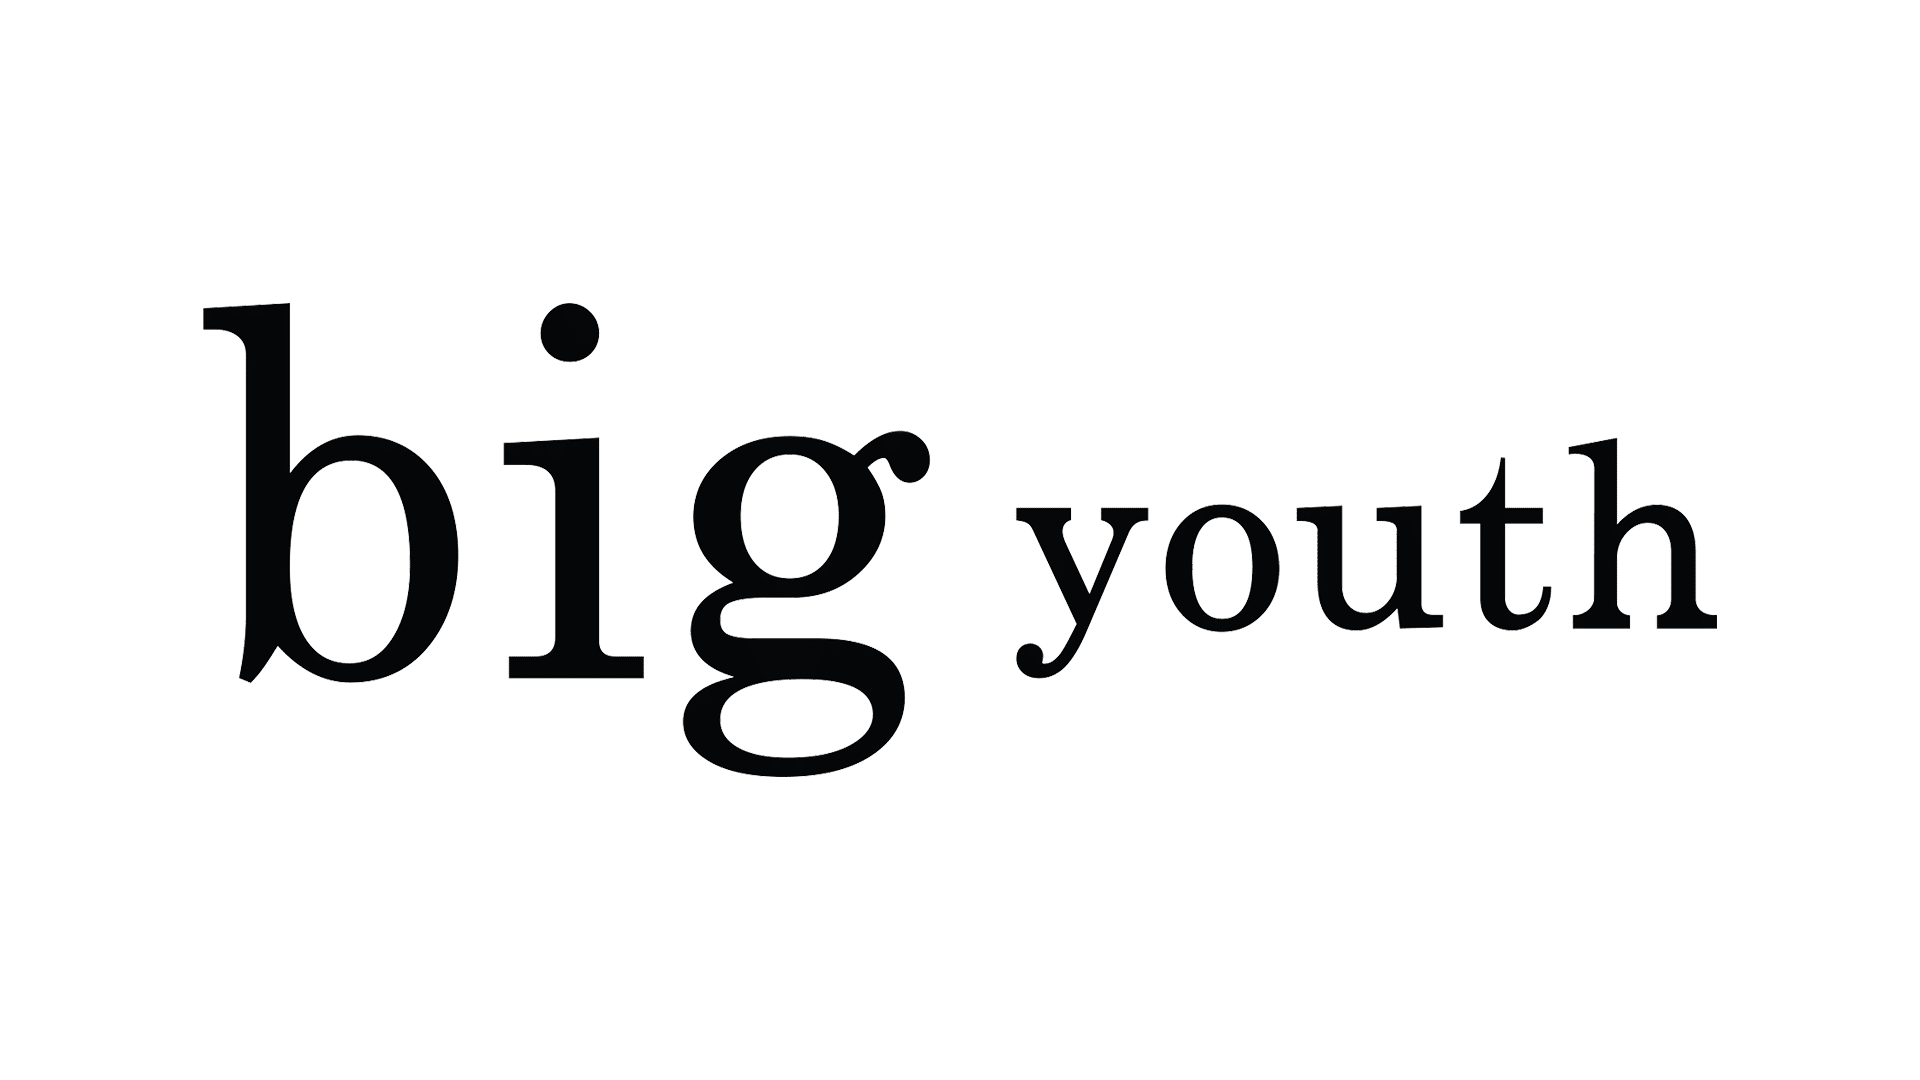 logobig youth1599666176 - Rénovation et protection des sols en marbre - [Hnet]